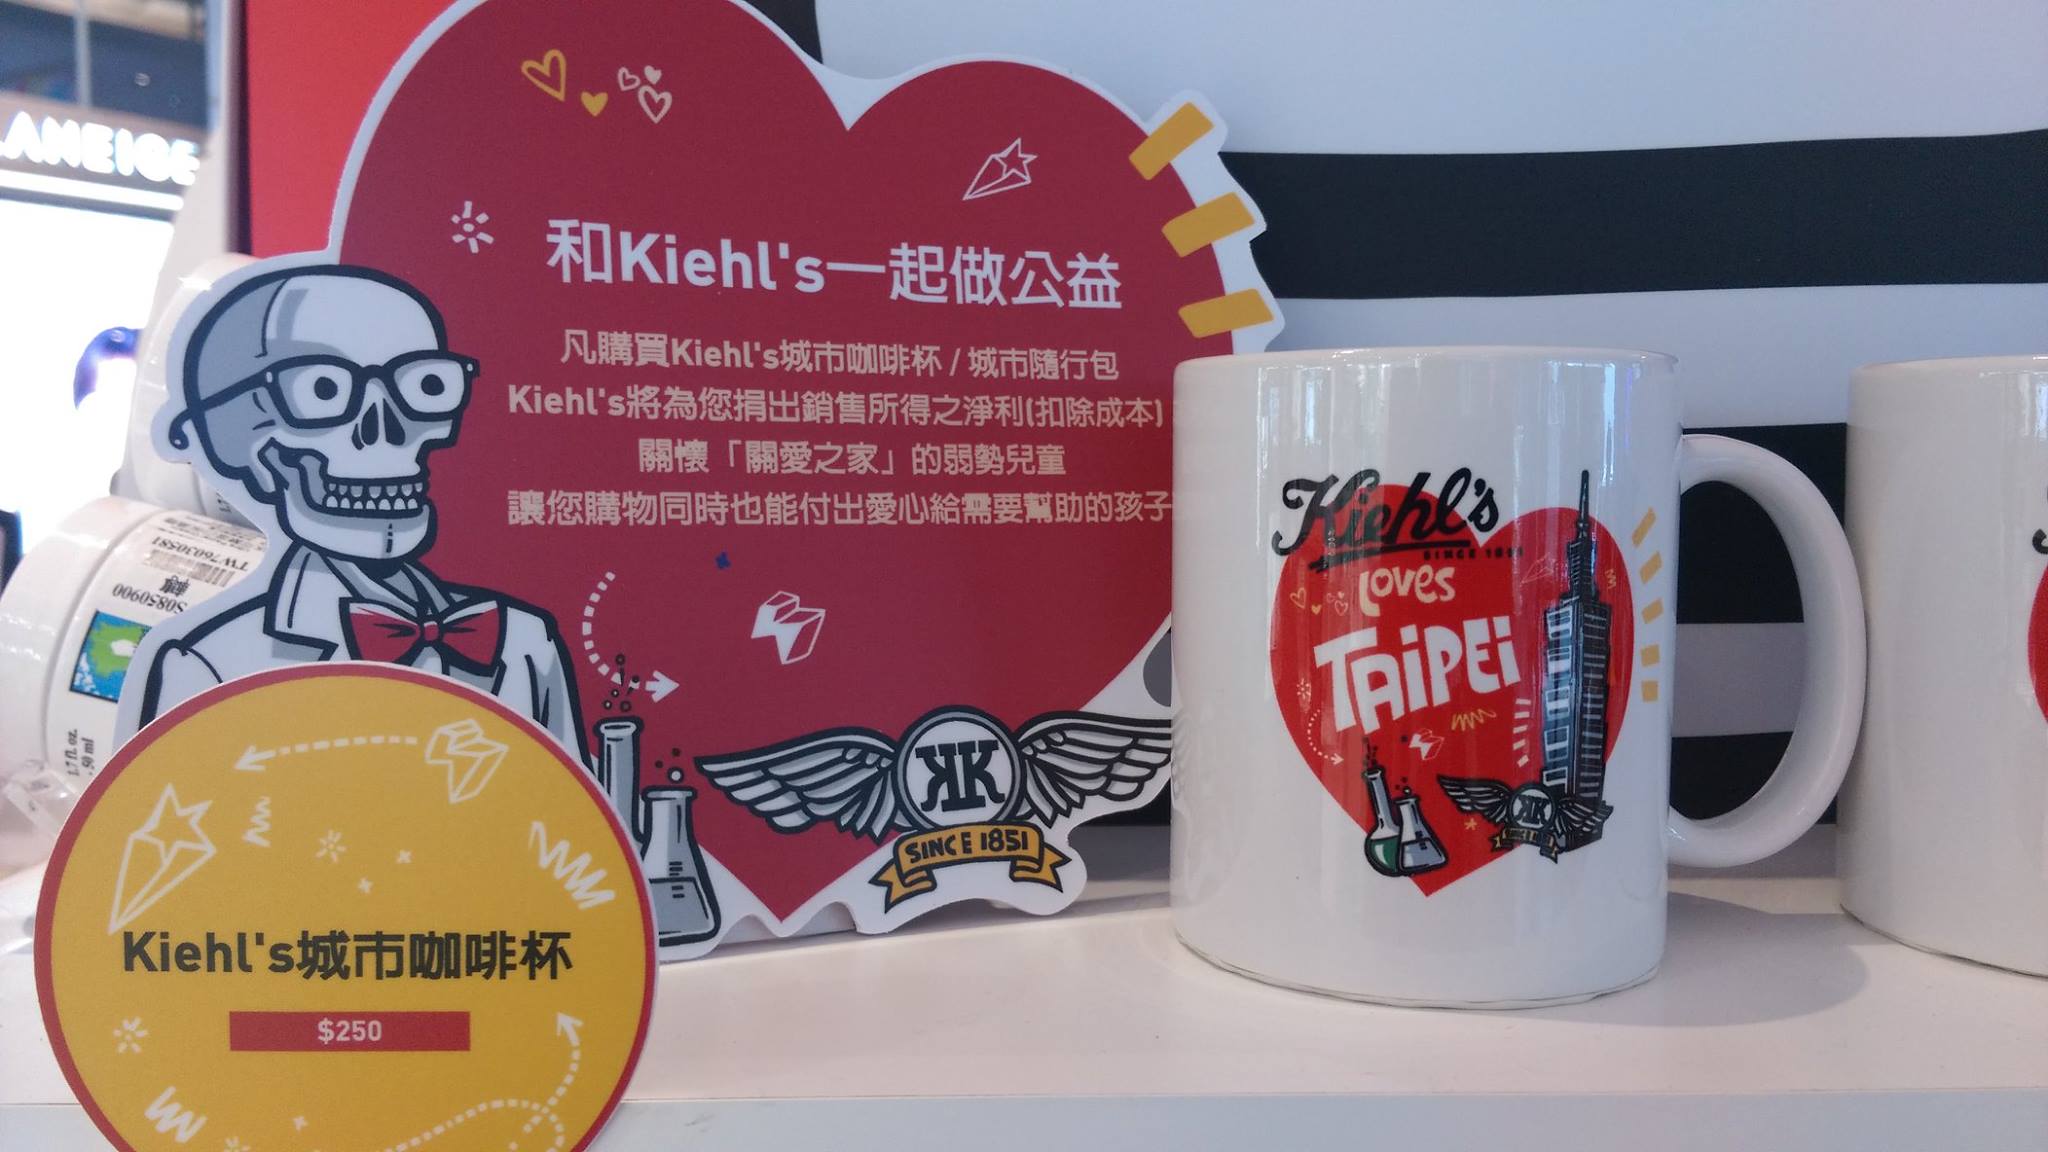 【關愛消息】Kiehl’s為愛台北活動推出公益商品支持關愛之家